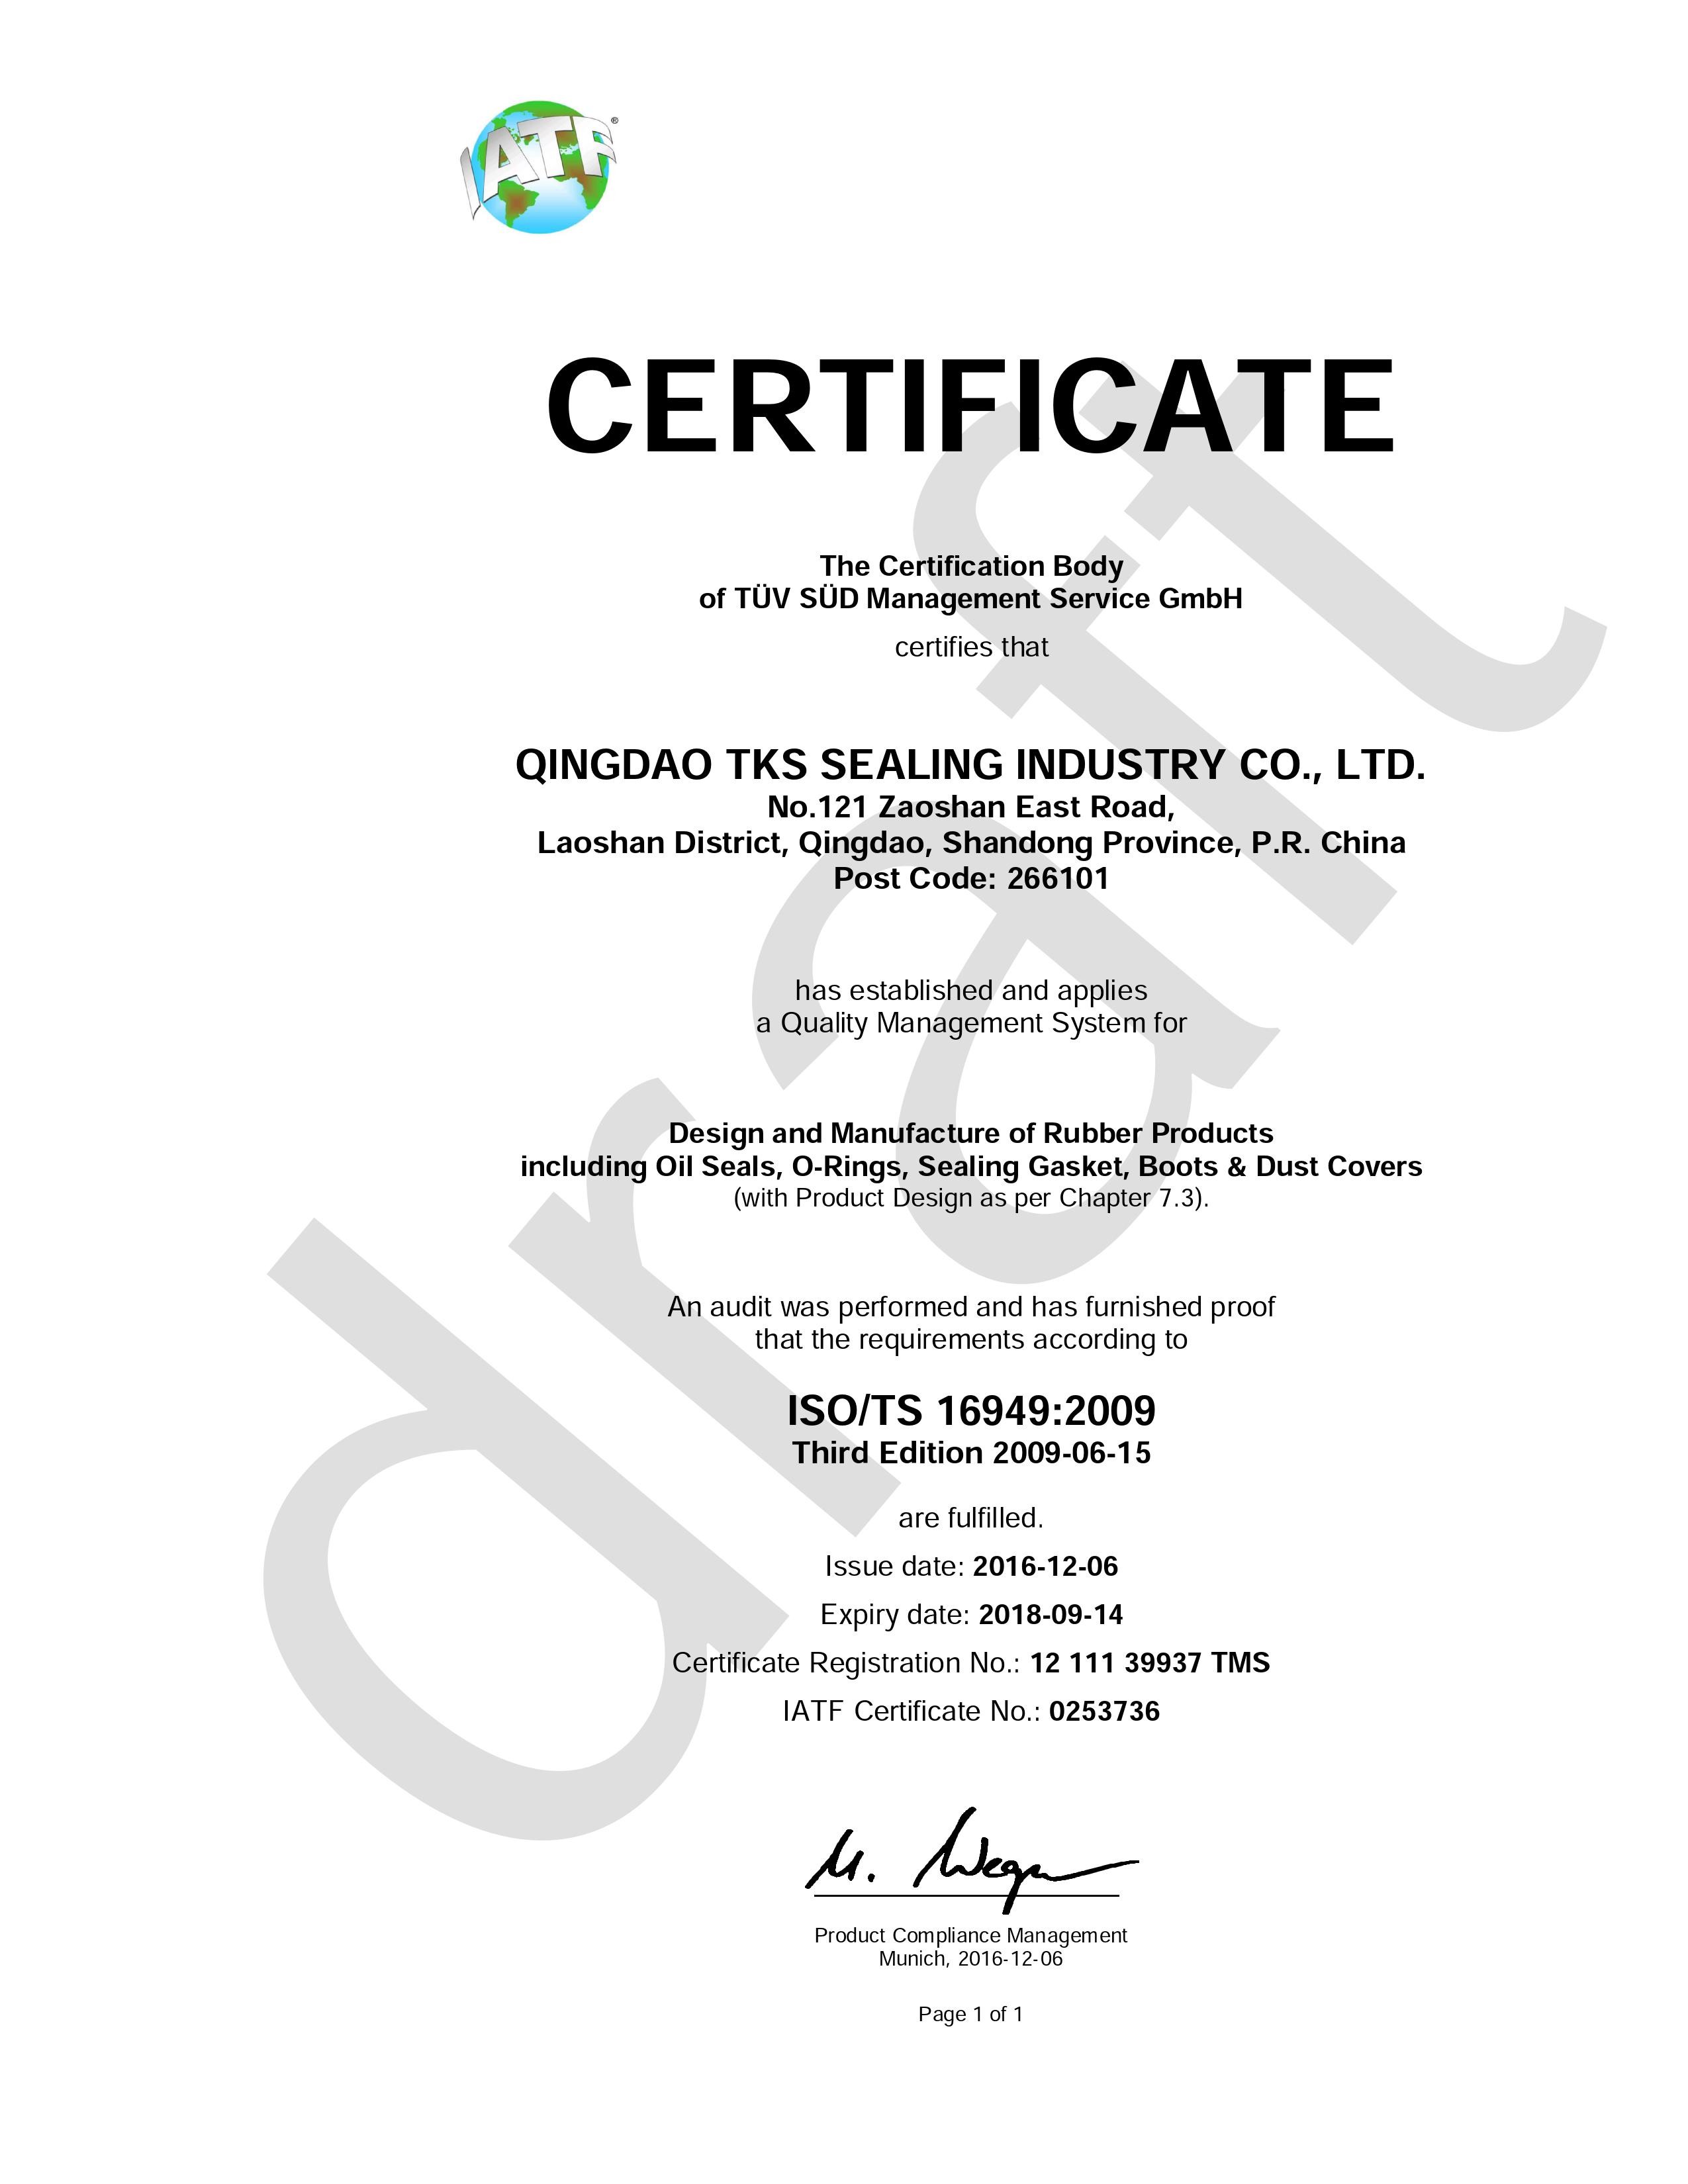 China Qingdao Global Sealing-tec co., Ltd Certification